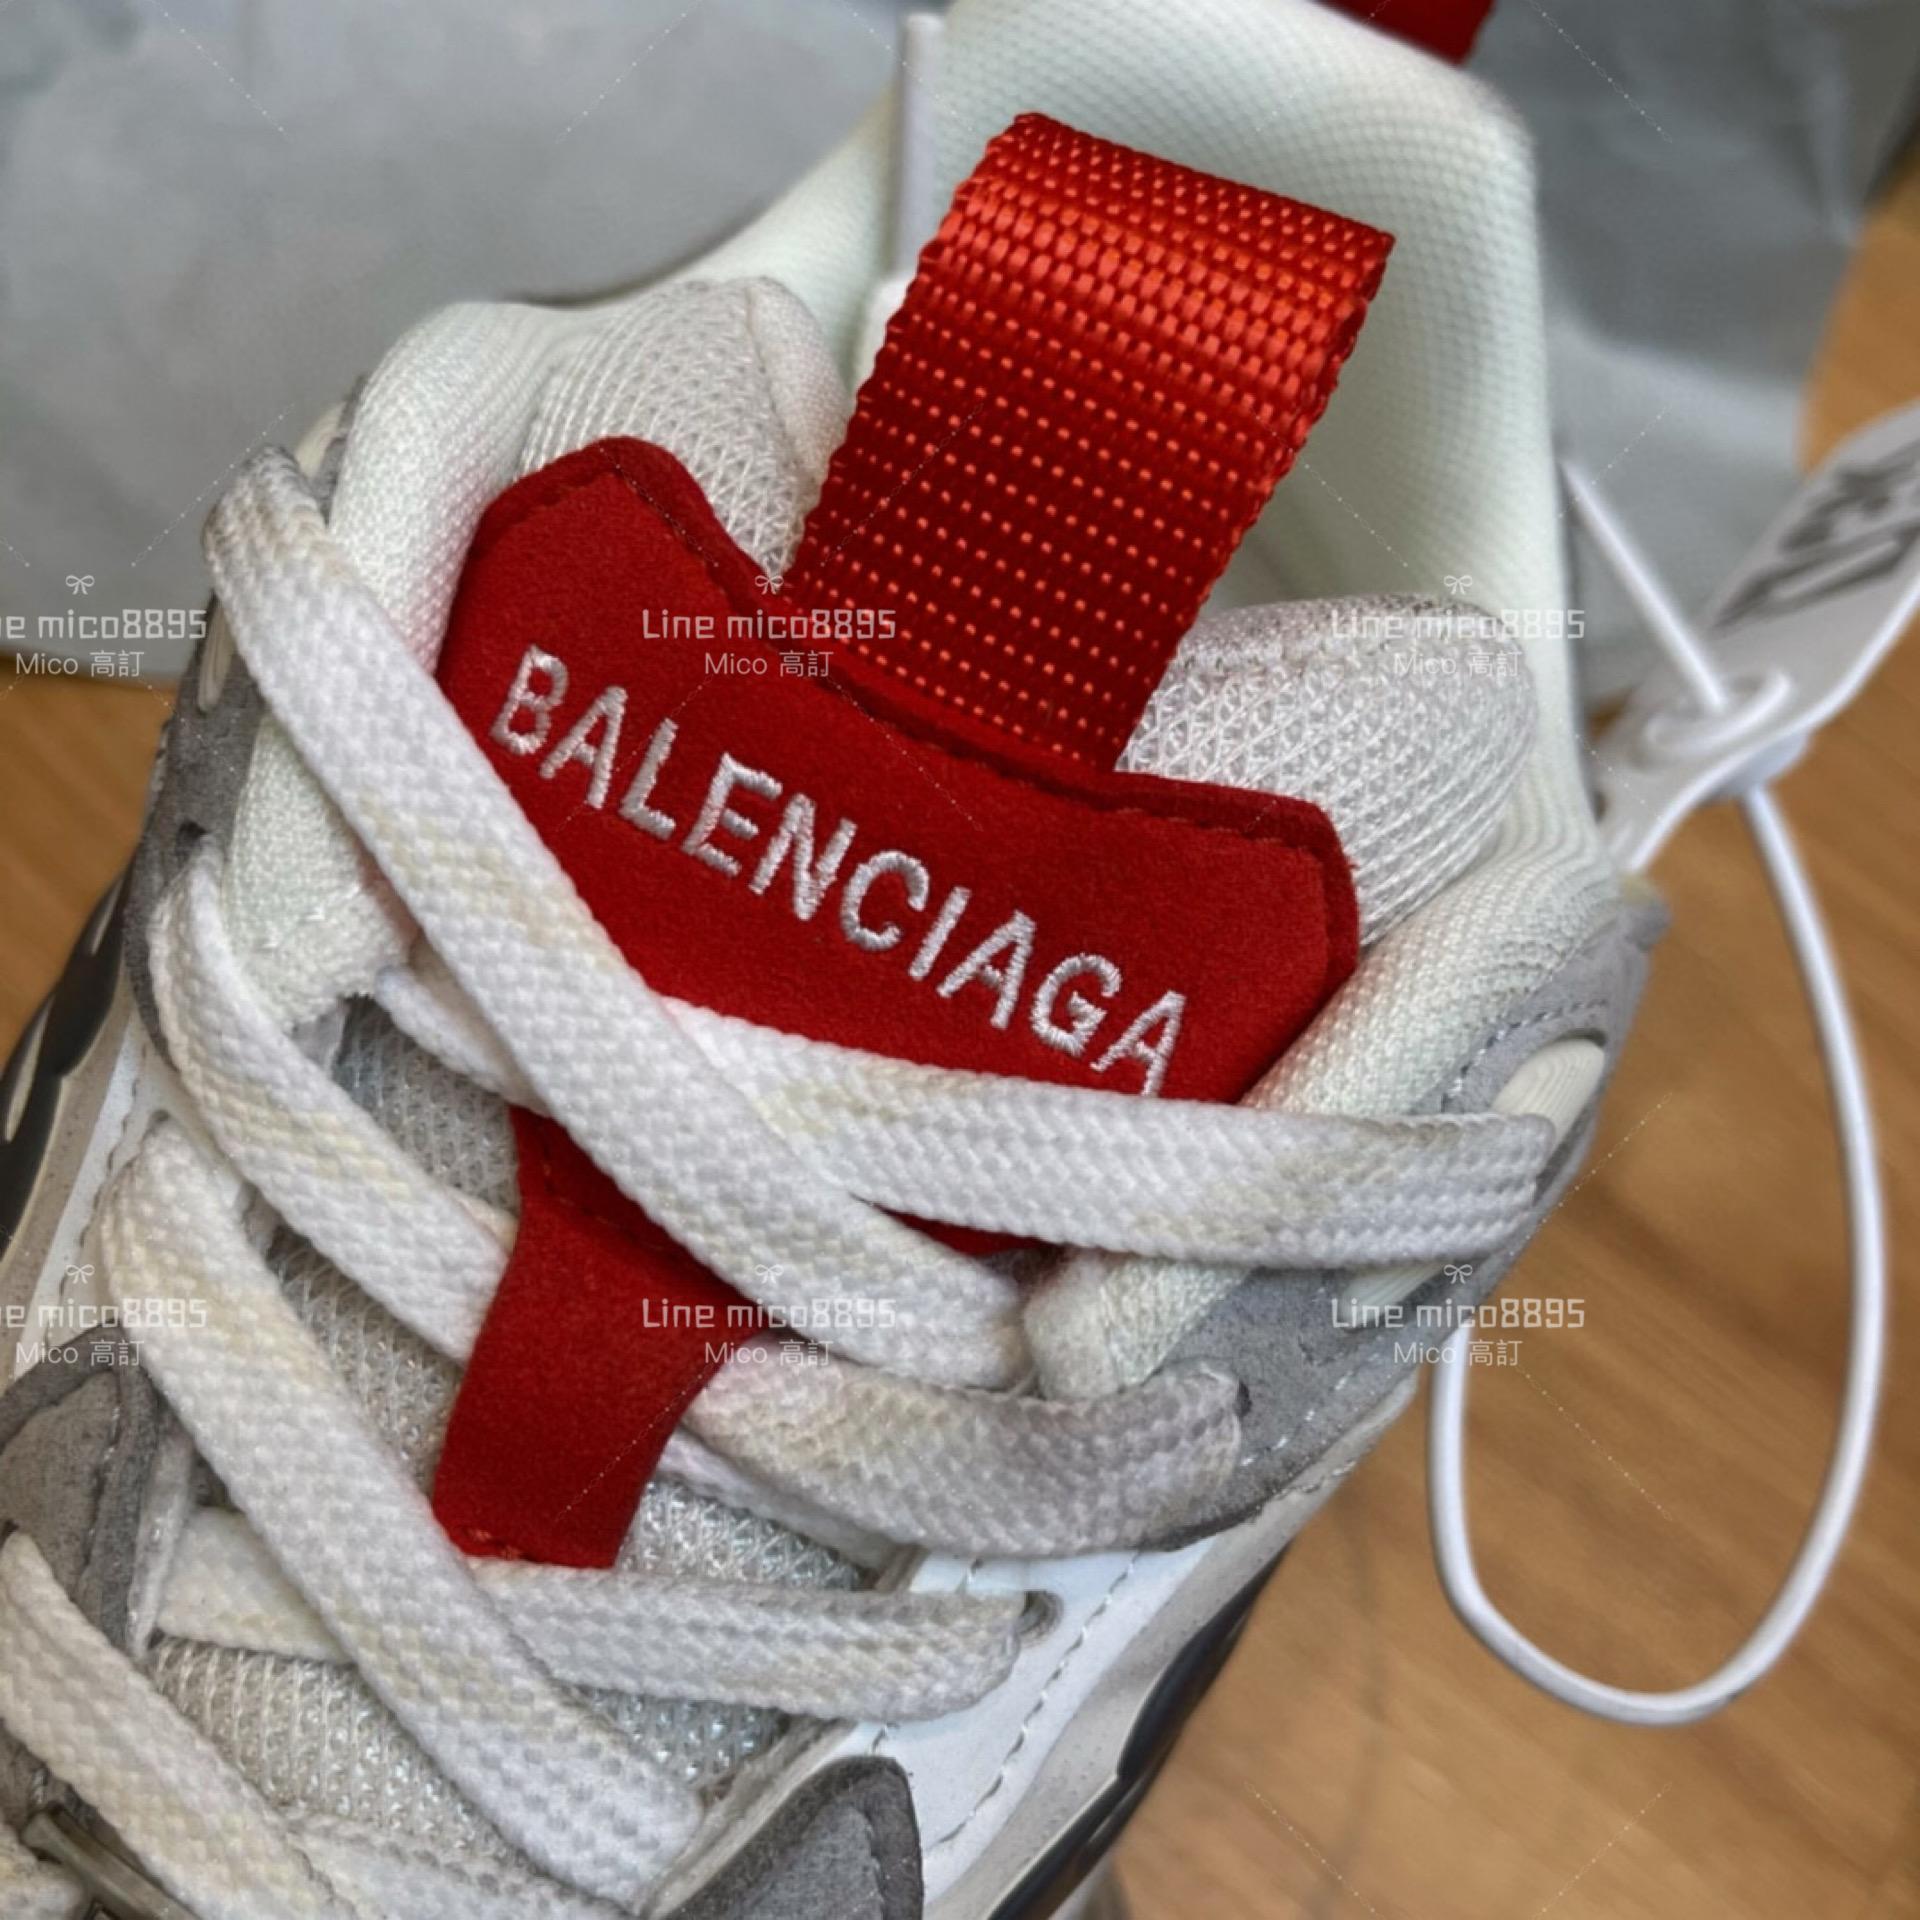 Balenciaga 巴黎世家CARGO 23ss 走秀款  《白紅灰配色》老爹鞋 運動鞋 35-46